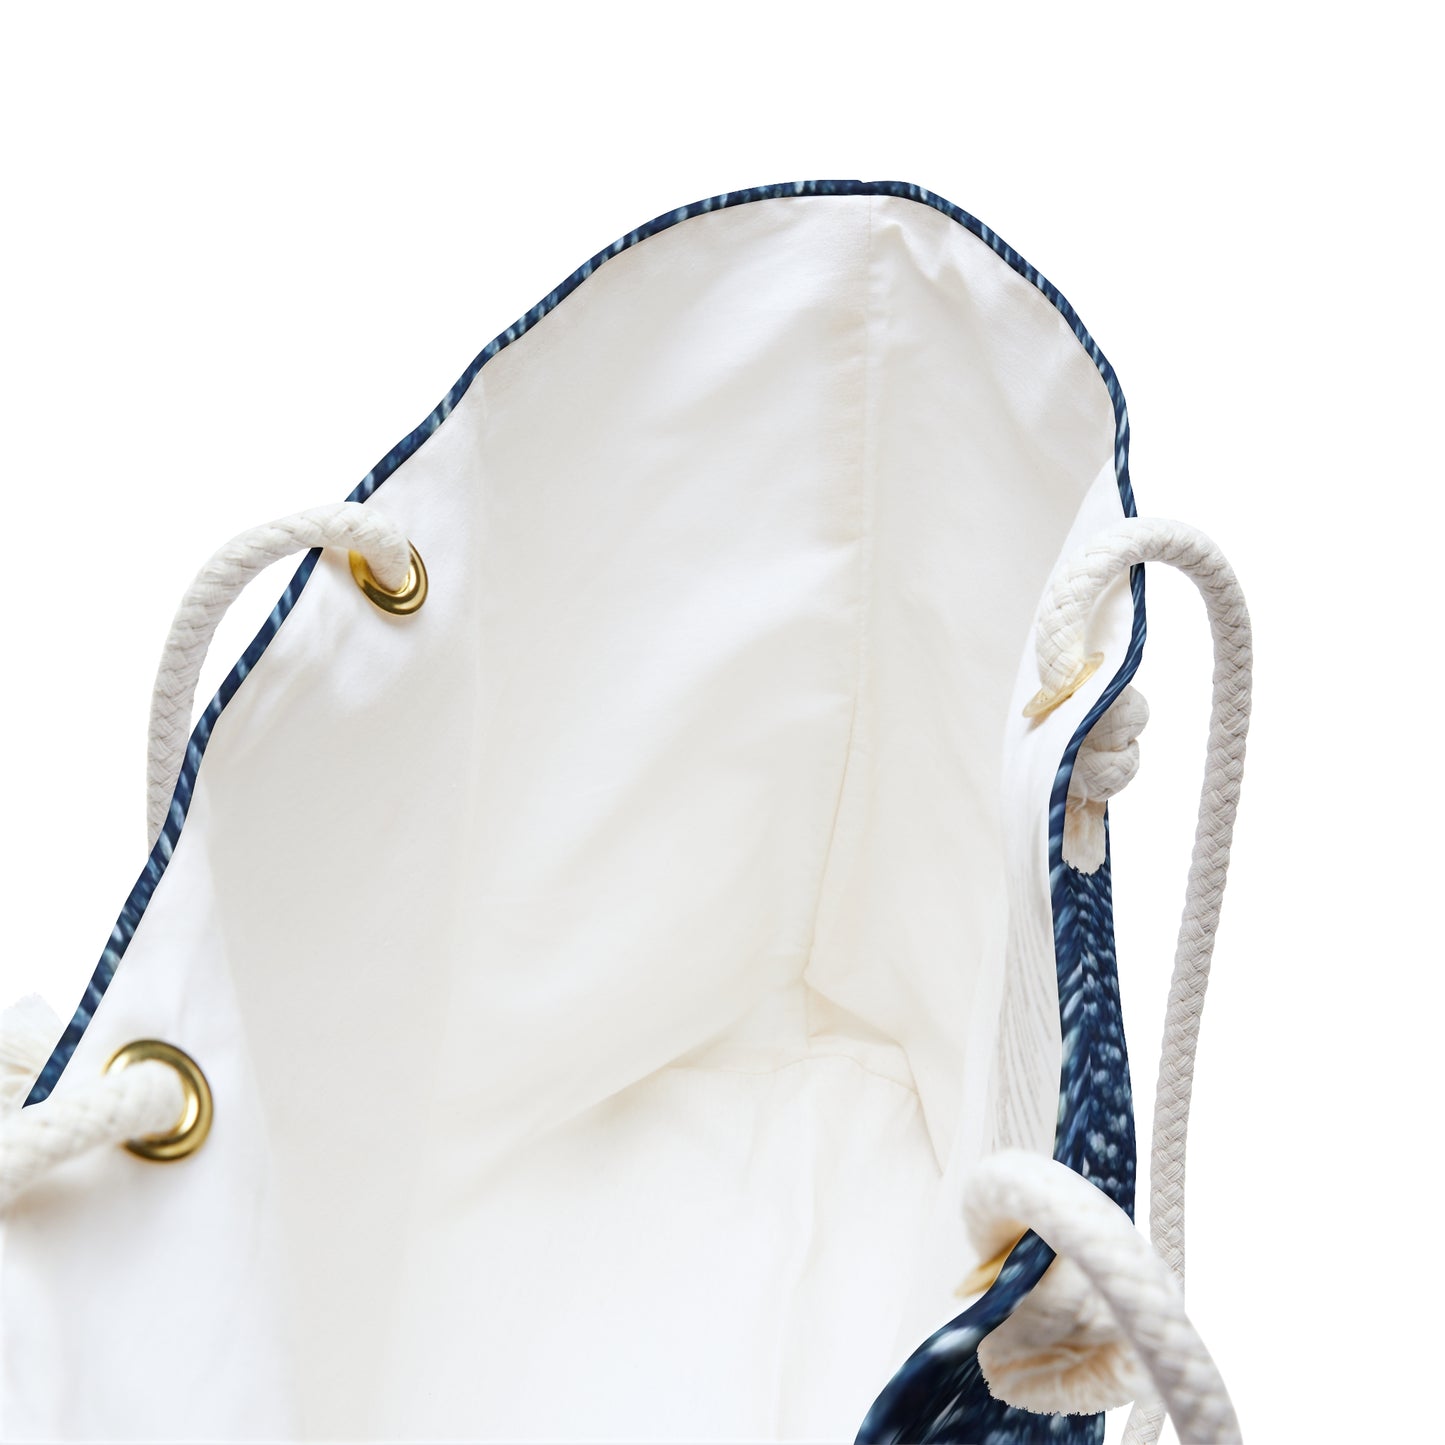 Denim-Inspired Design - Distinct Textured Fabric Pattern - Weekender Bag